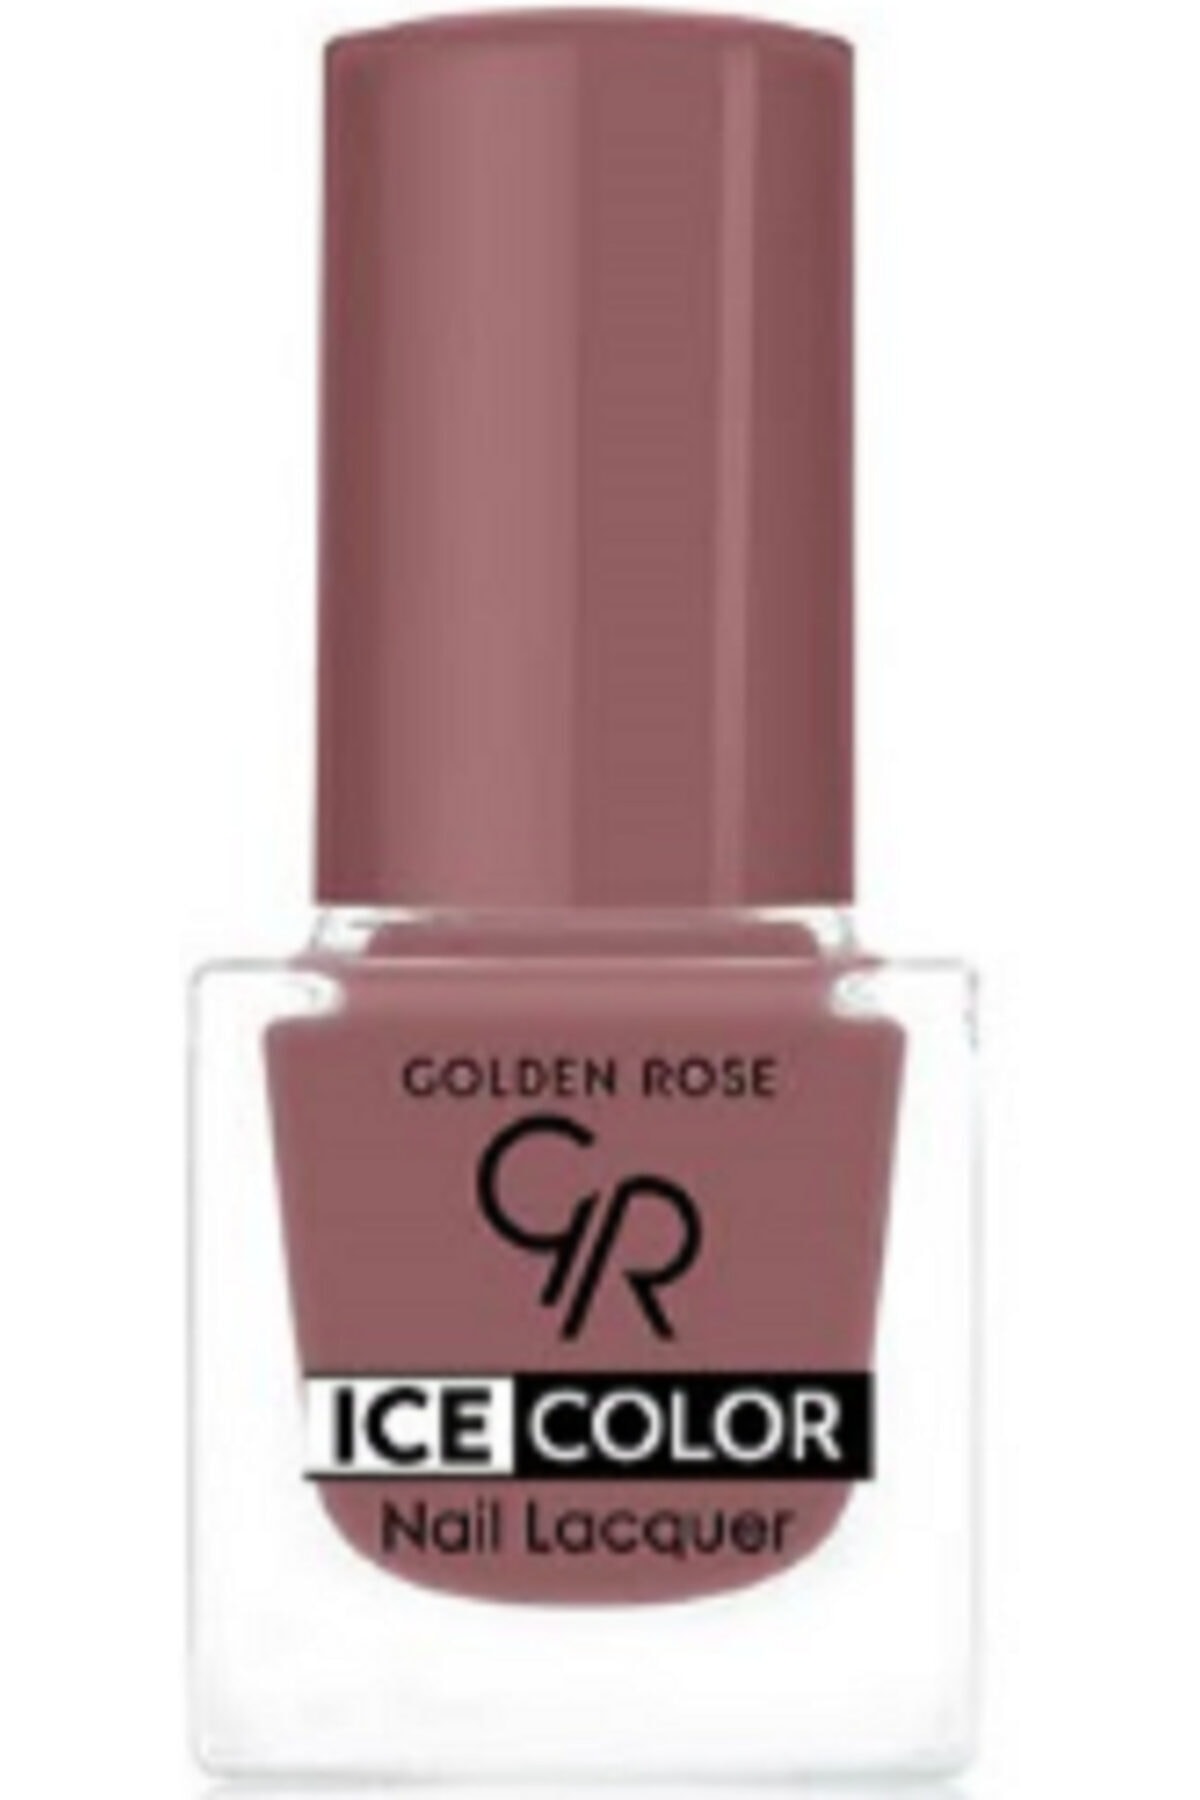 لاک ناخن یخی آیس چیک ICE شماره 144 رنگ نارنجی گلدن رز Golden Rose